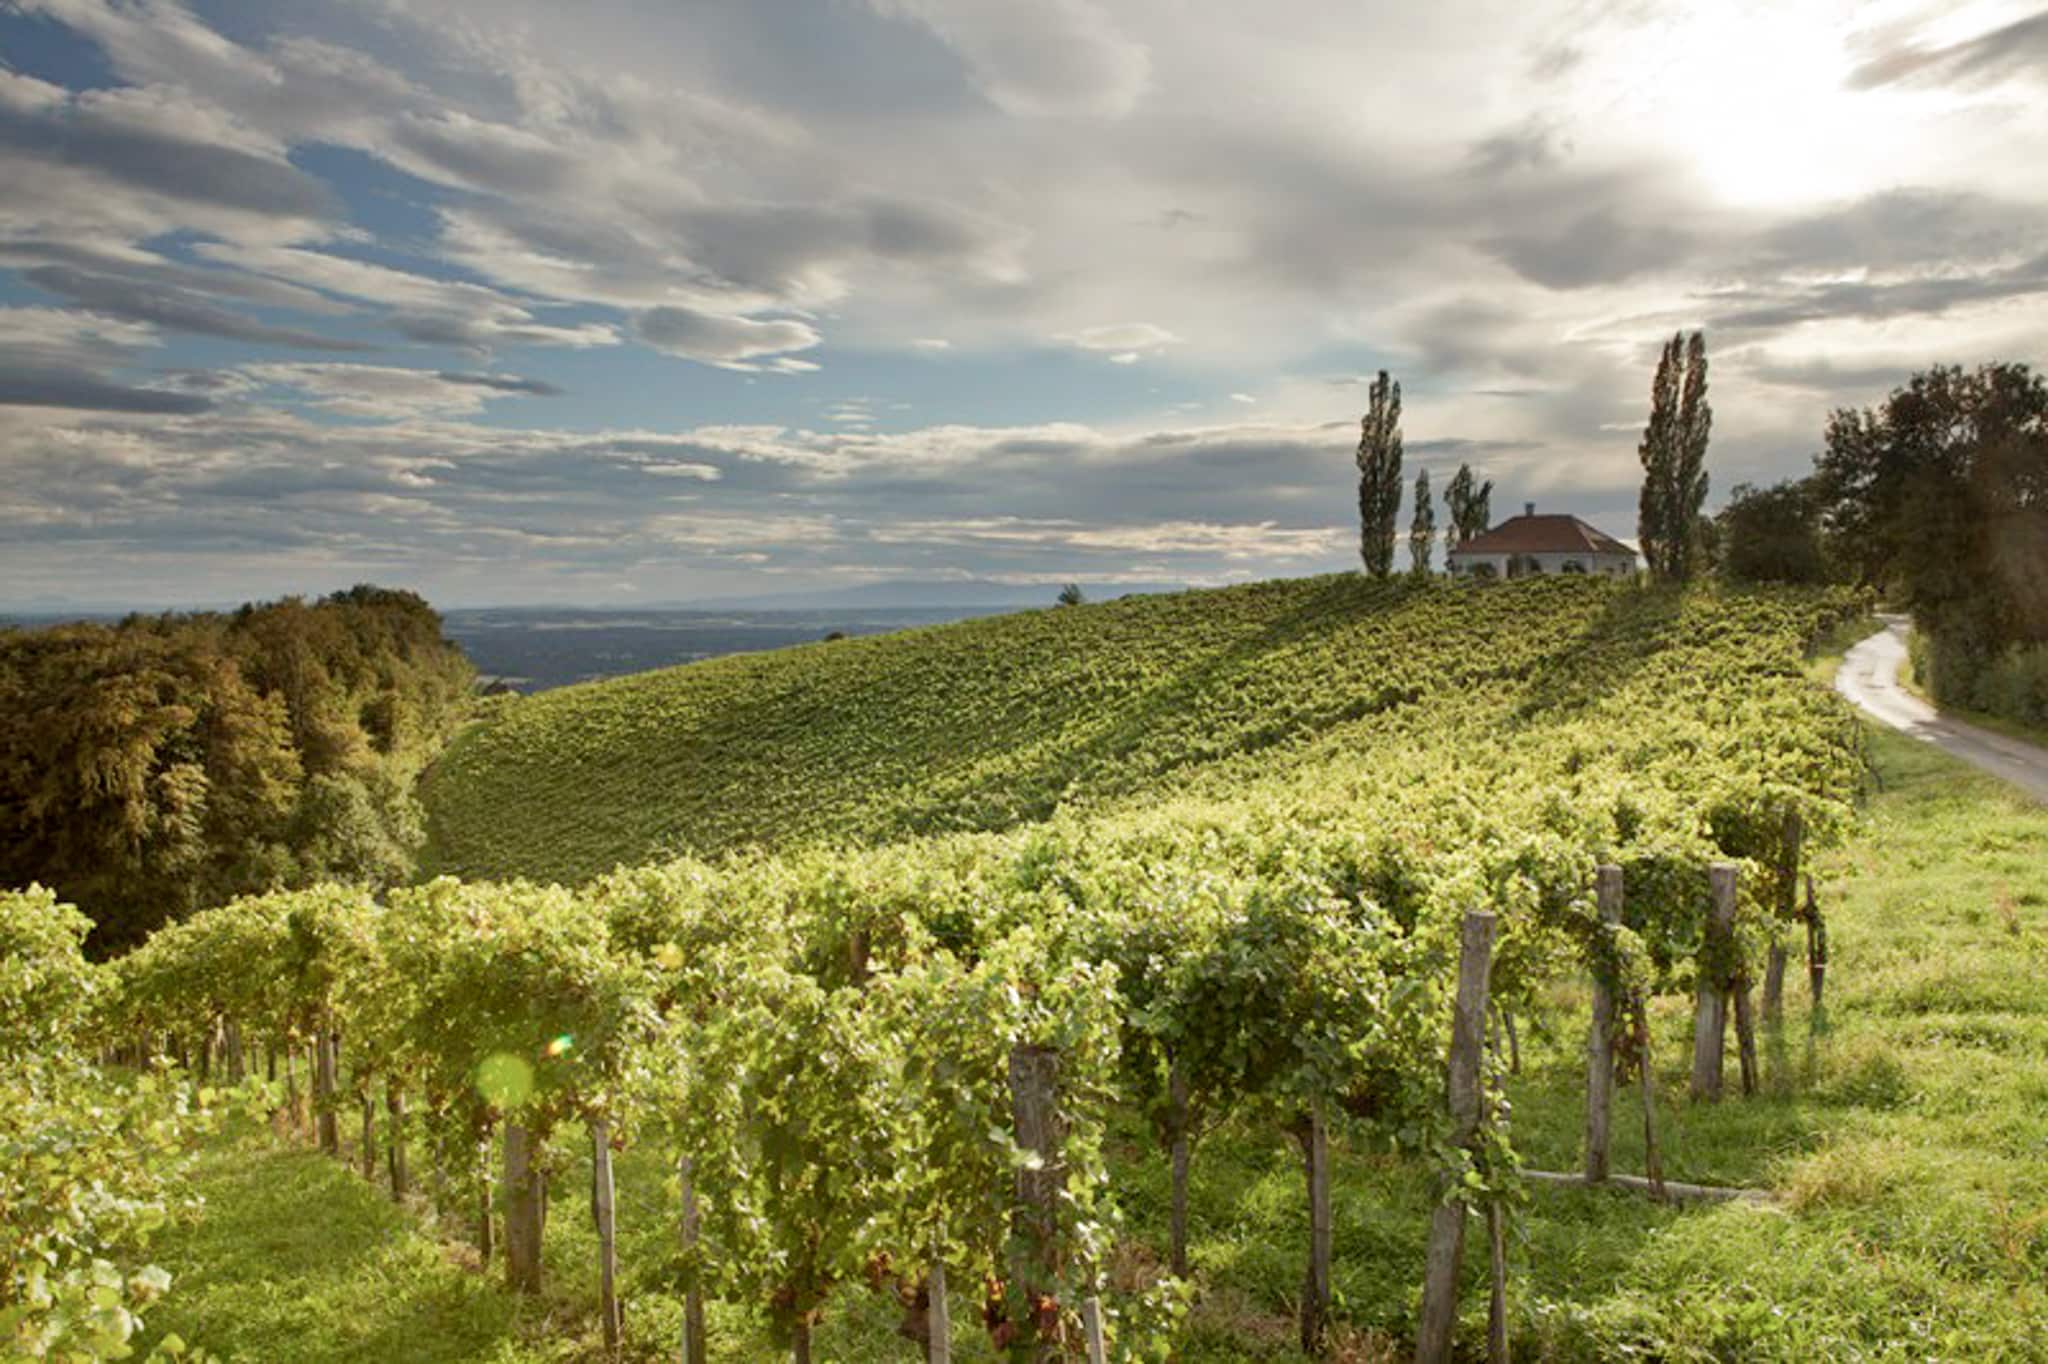 Blick auf die malerische Hügellandschaft des Thermen- & Vulkanlands mit Weinreben.